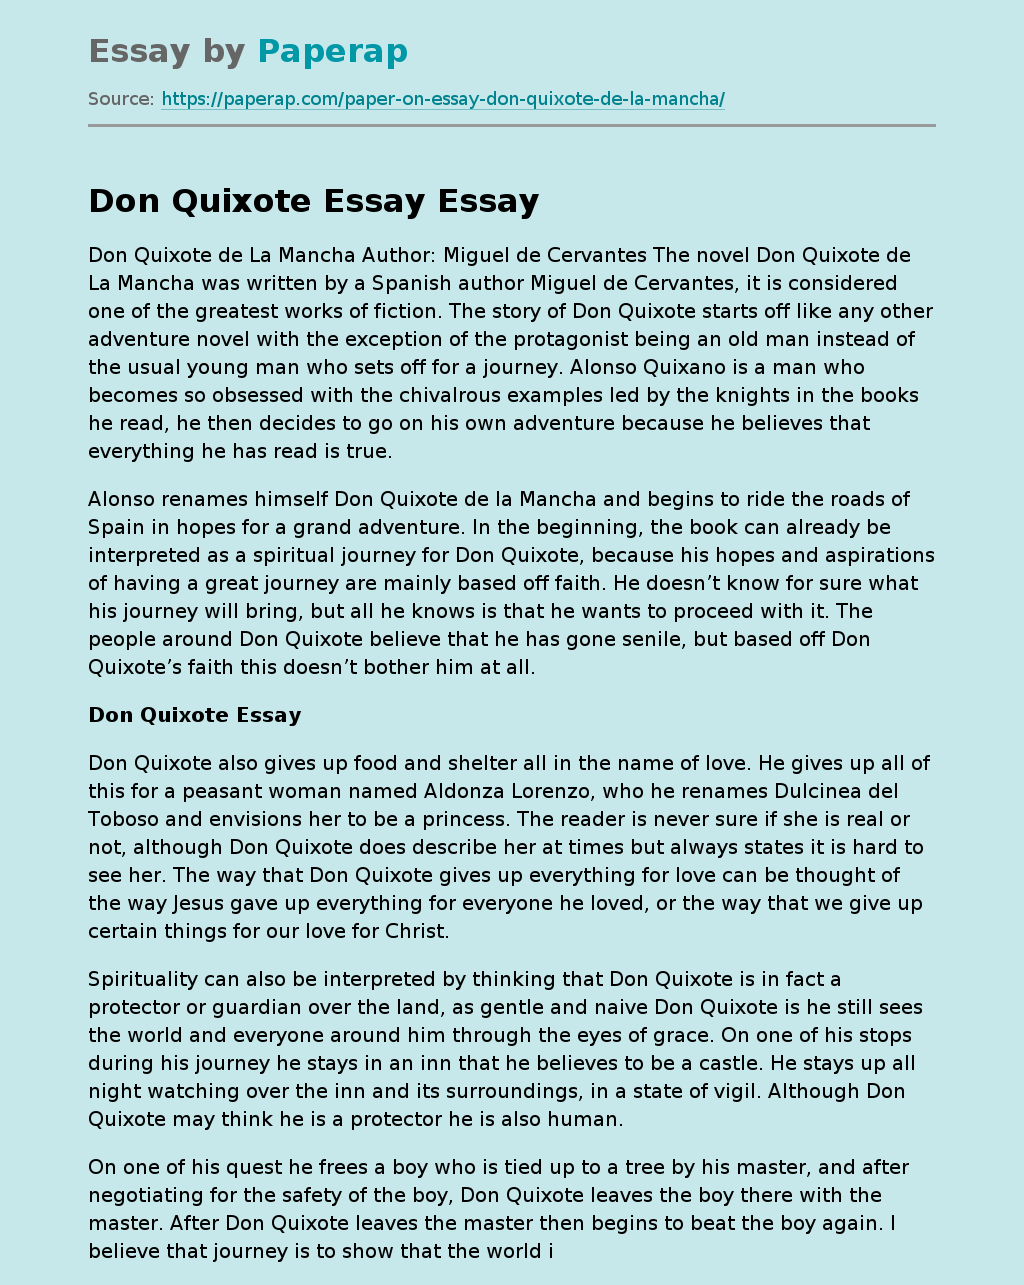 Don Quixote Essay